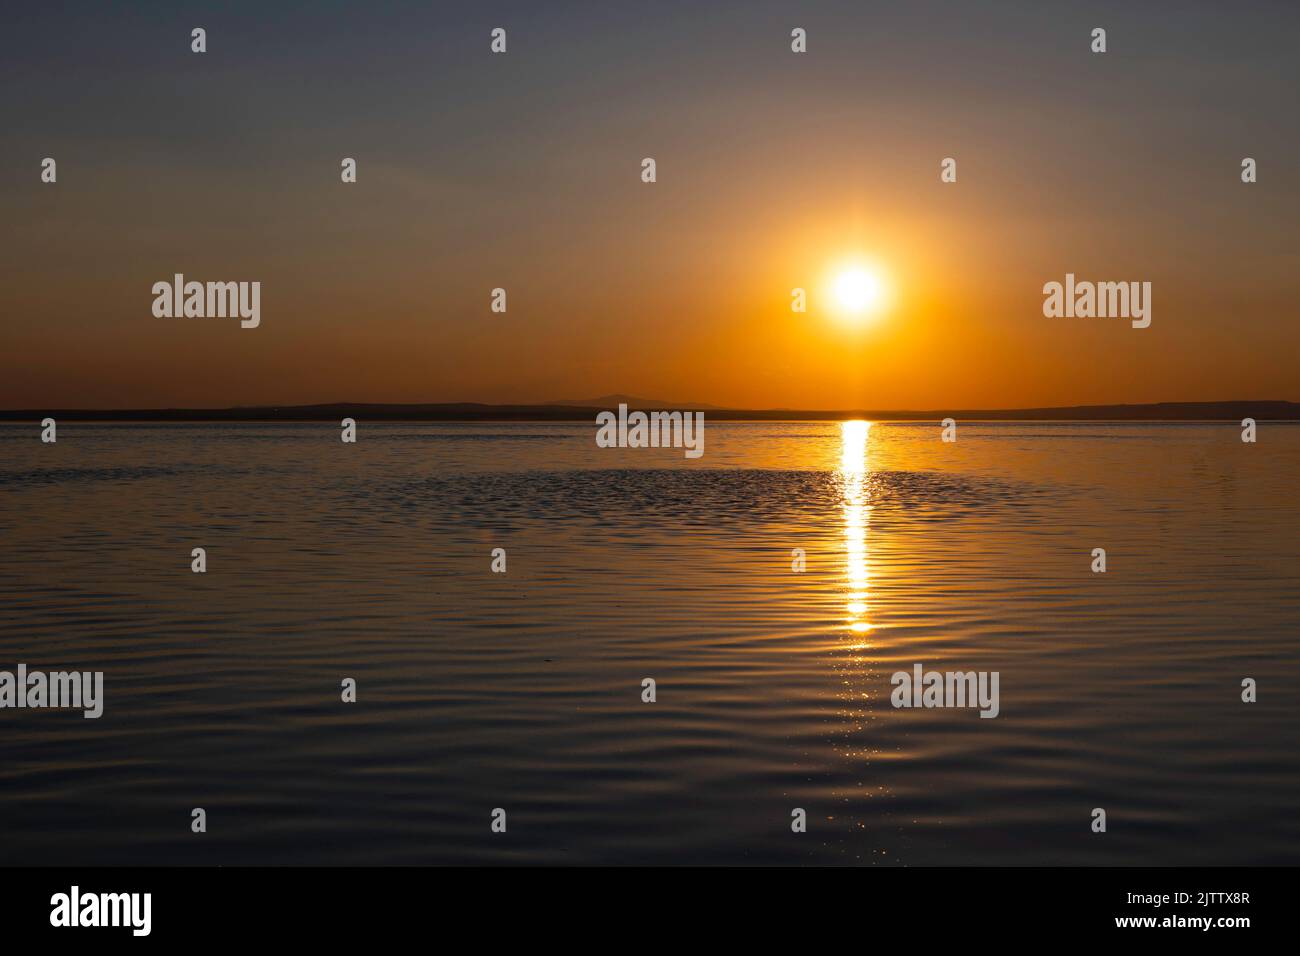 Sunset photo. Sunset or sunrise over the lake. Inspirational quotes background photo. Stock Photo